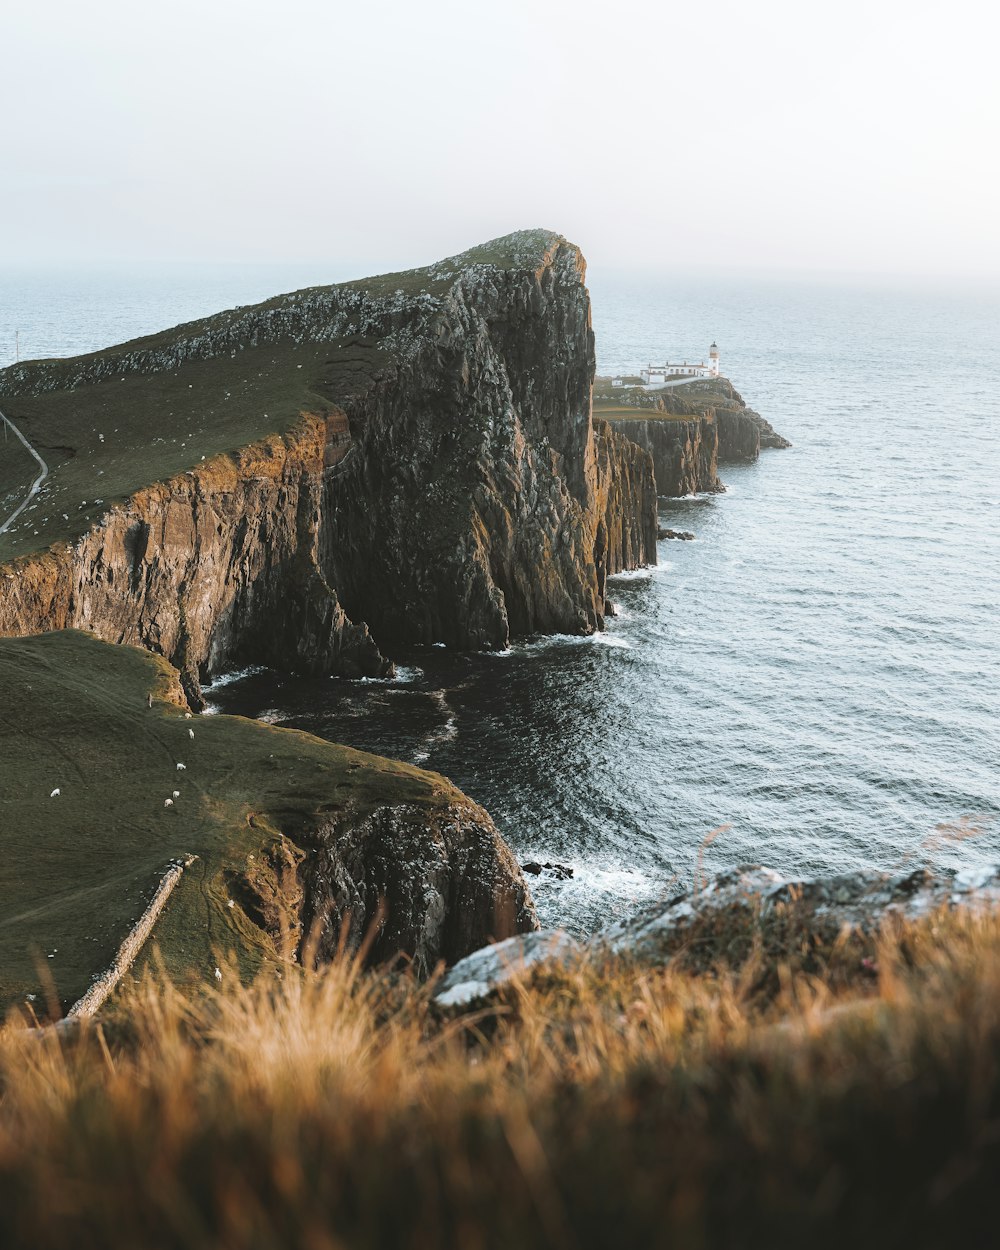 formazione rocciosa marrone e verde accanto al mare durante il giorno